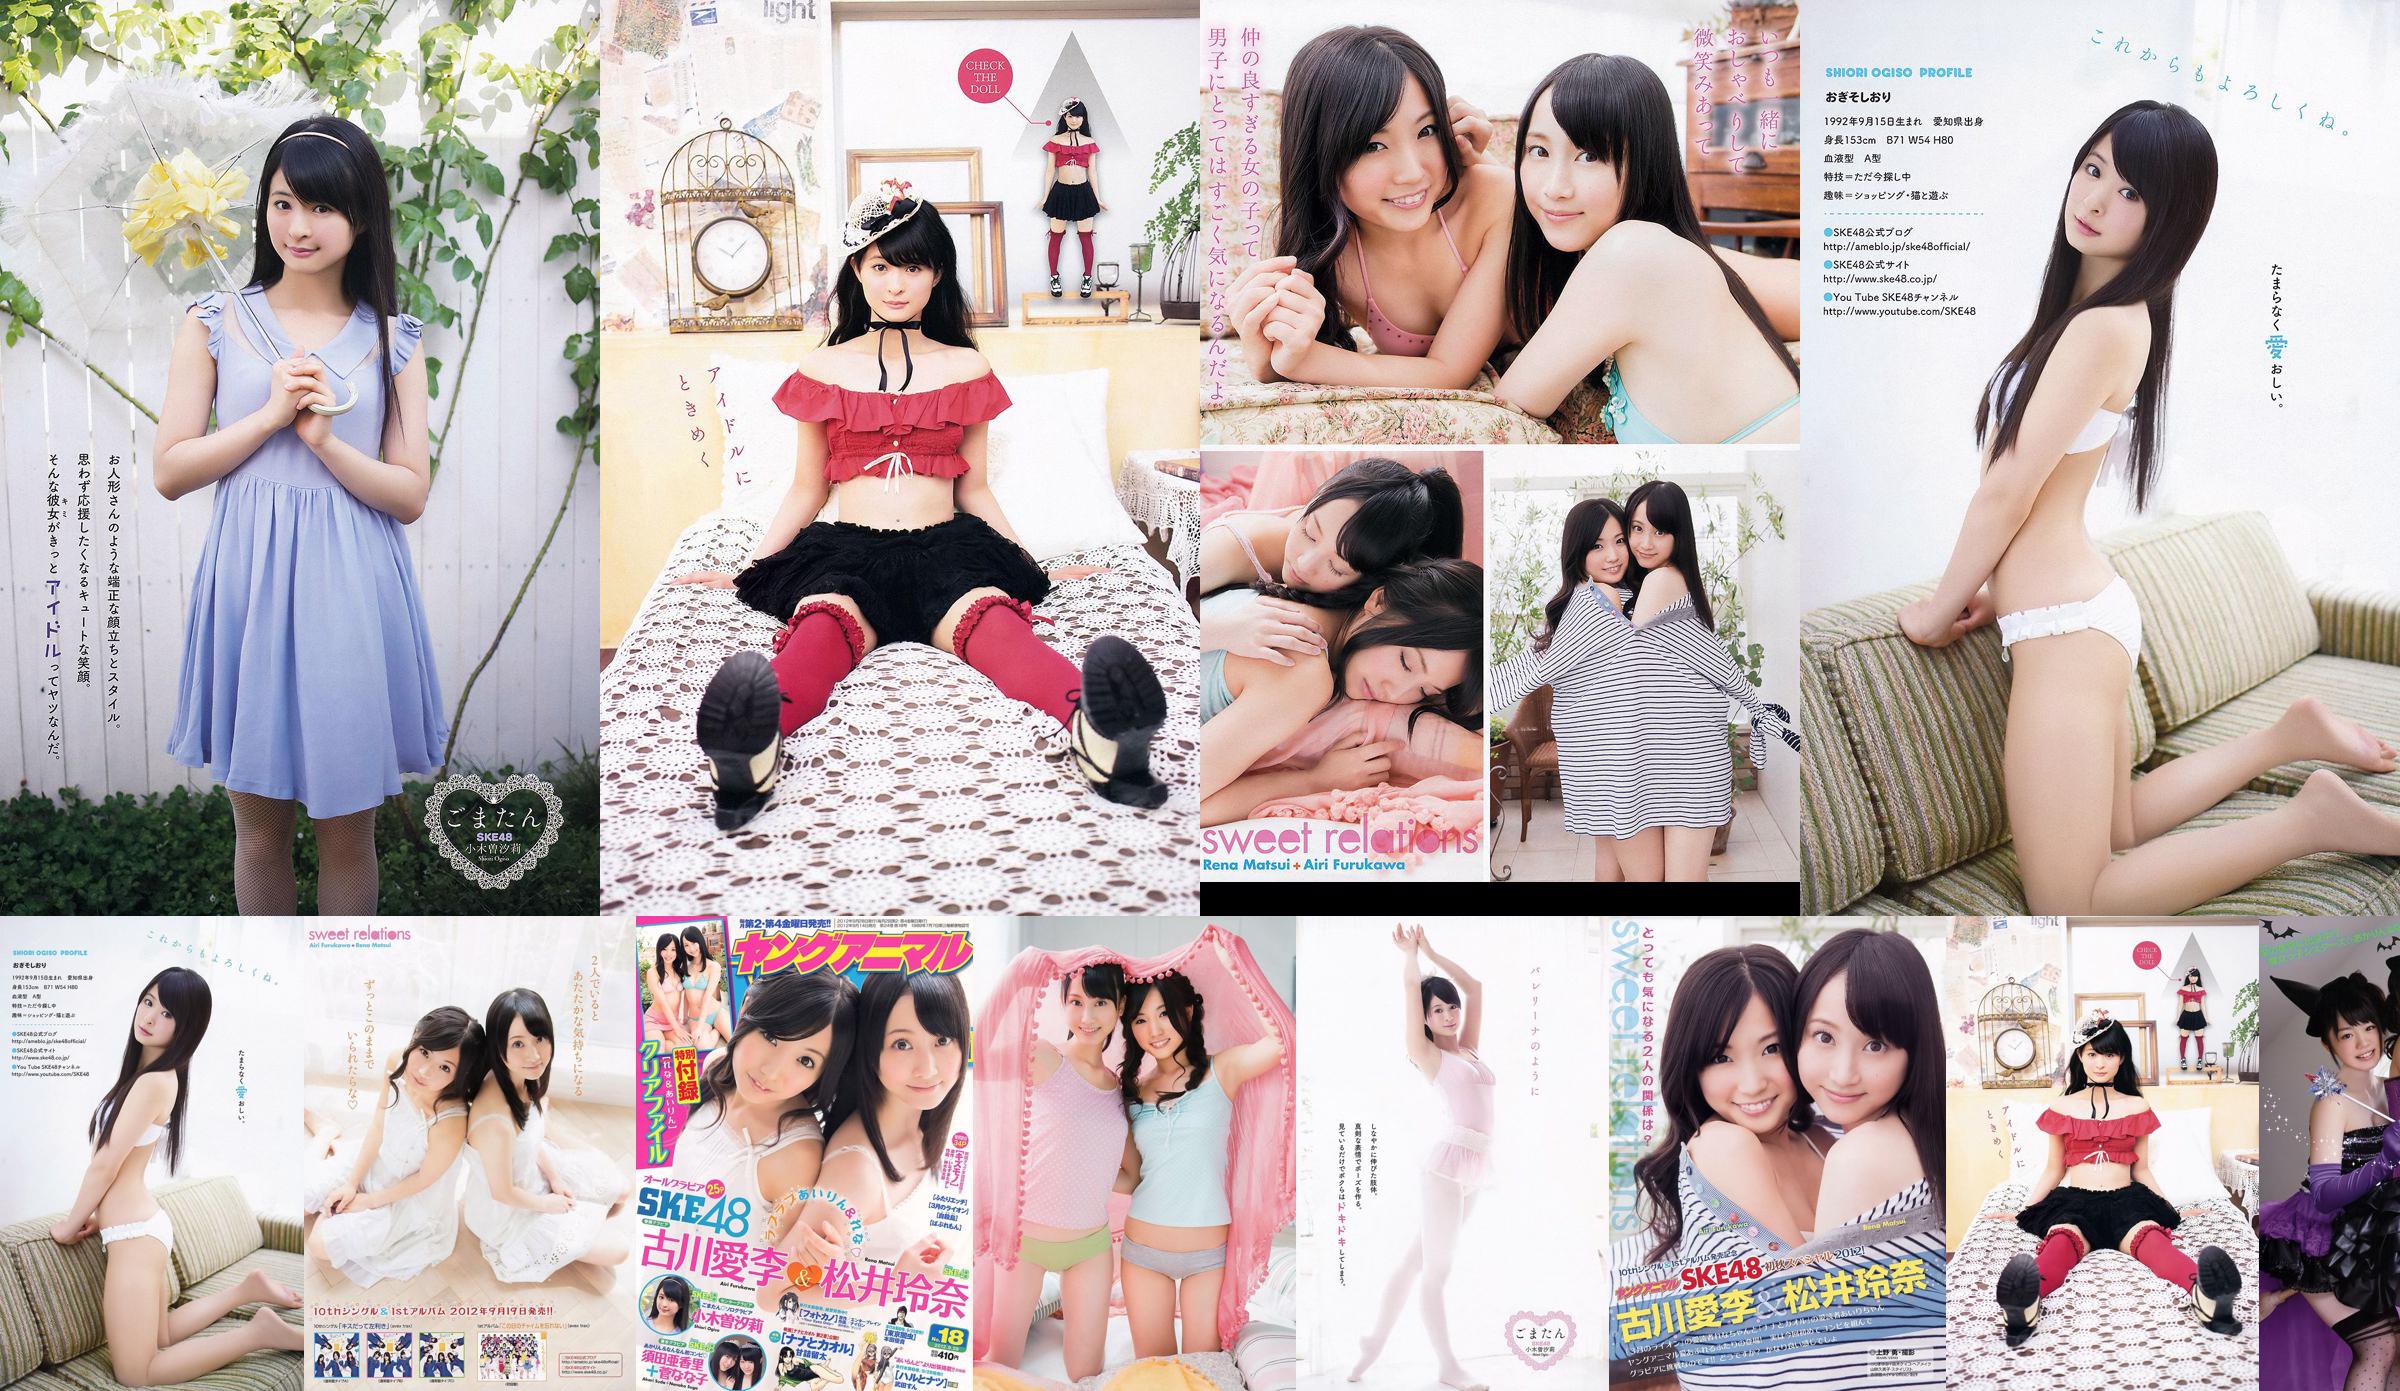 Ai Li Furukawa, Rena Matsui, Sasa Ogi, Aikari Suda [Young Animal] Tạp chí ảnh số 18 năm 2012 No.073388 Trang 1